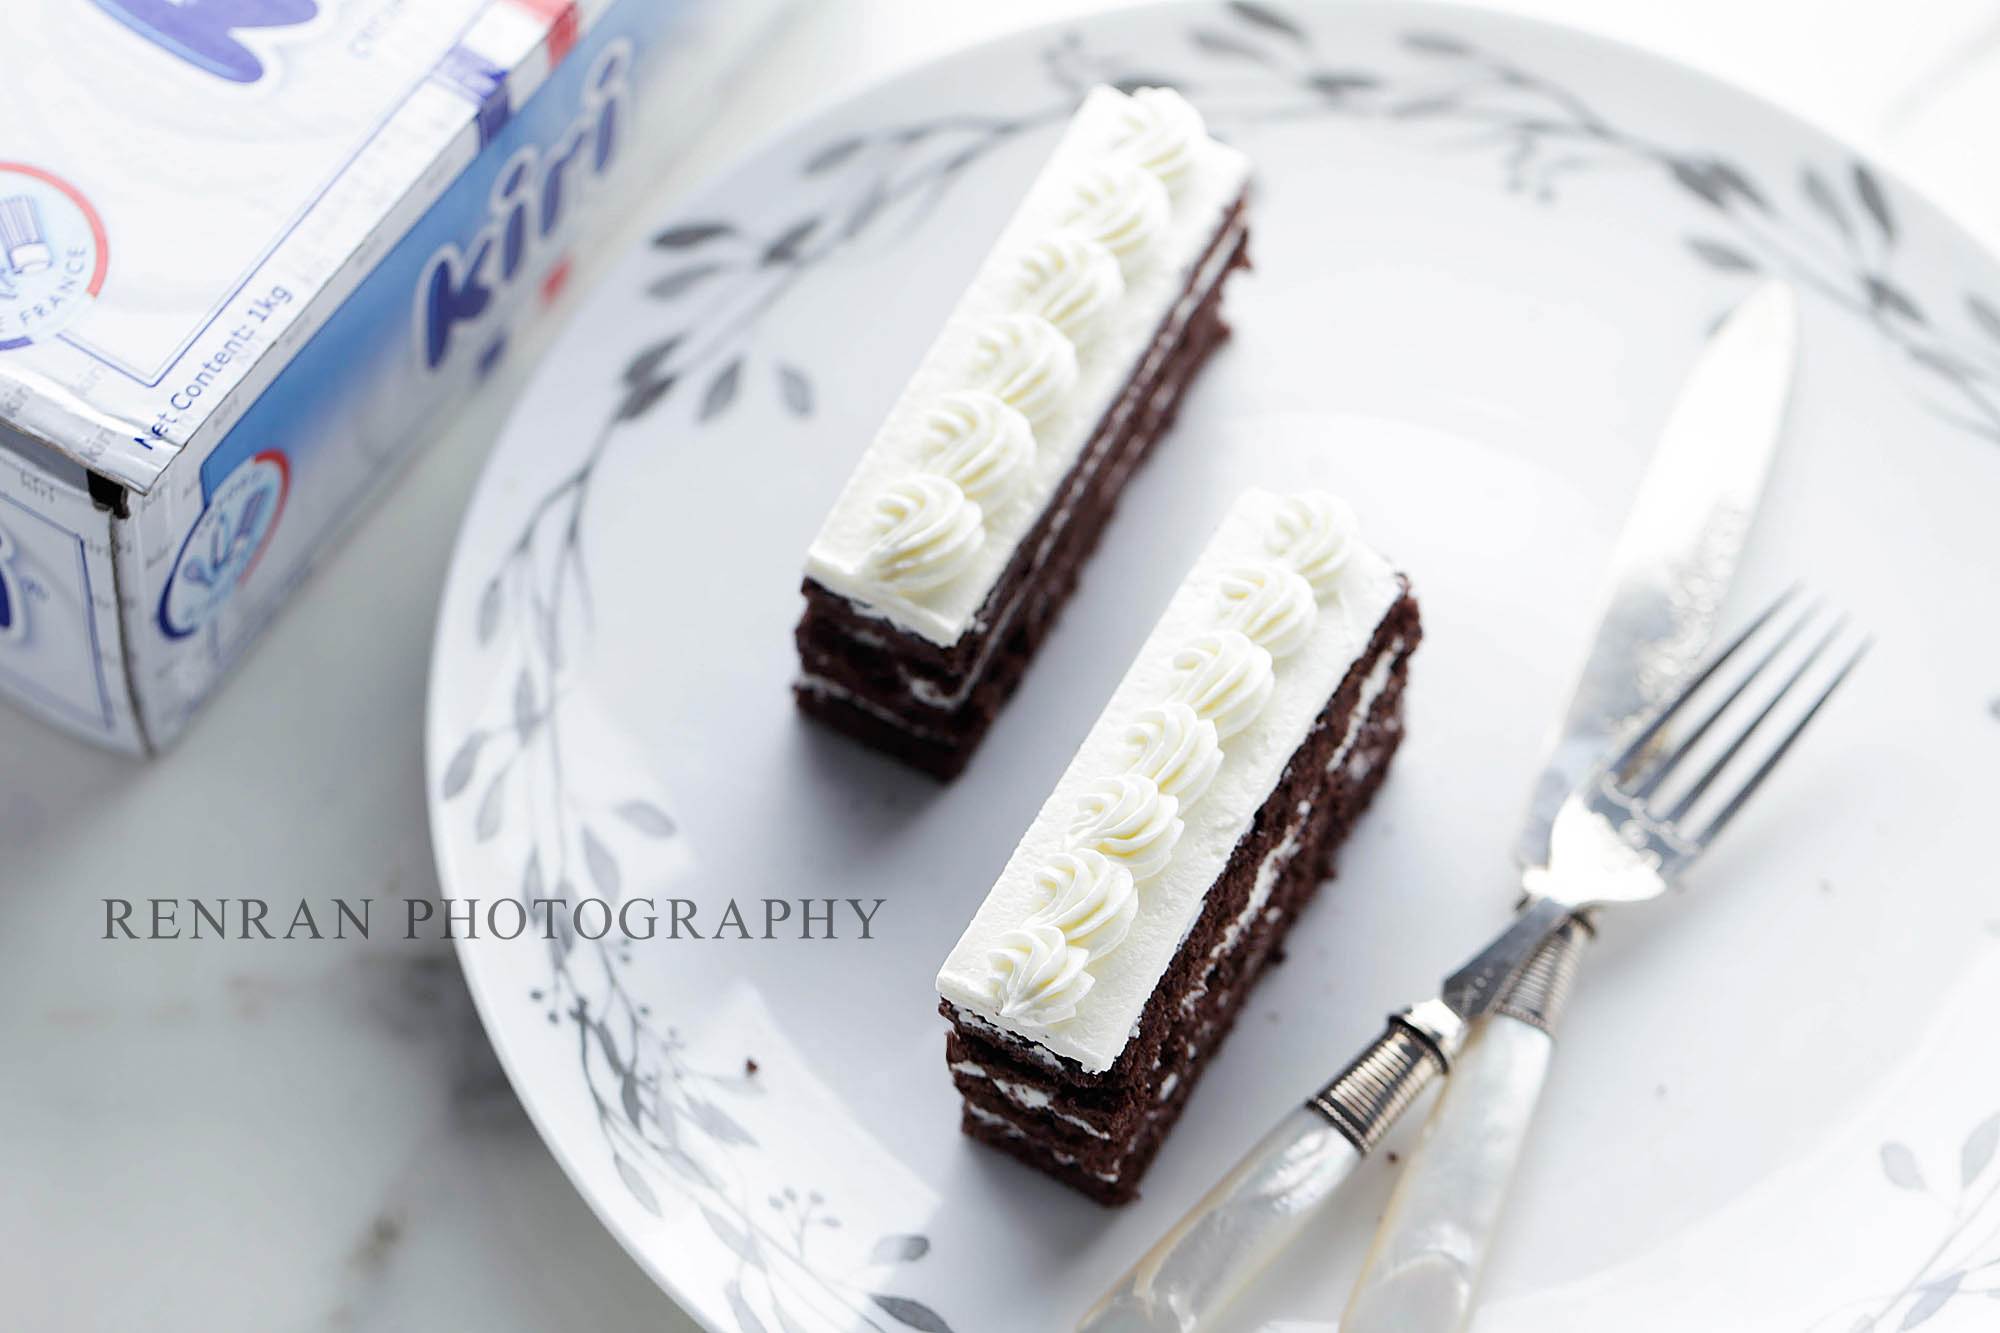 Kiri奶油芝士食谱——奶油芝士霜饰巧克力海绵蛋糕的做法